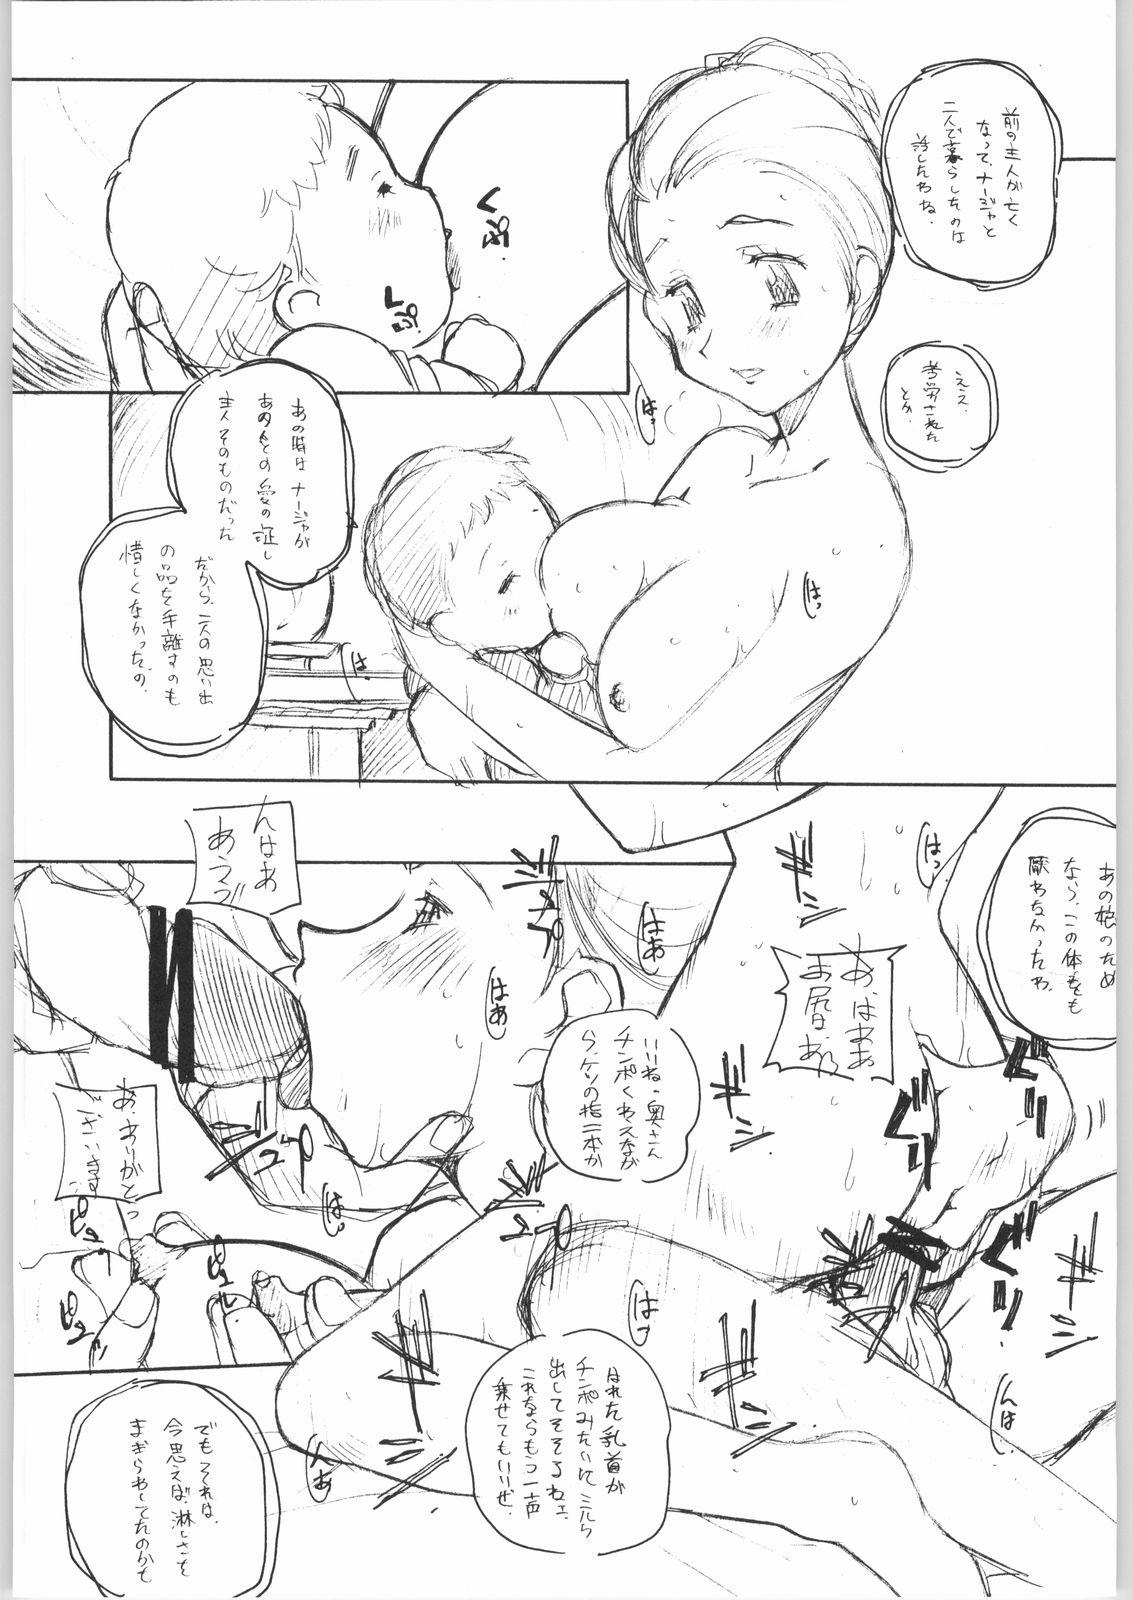 Class Room Suki-Suki - Sakura taisen Xenosaga Ashita no nadja Gad guard Secretary - Page 12